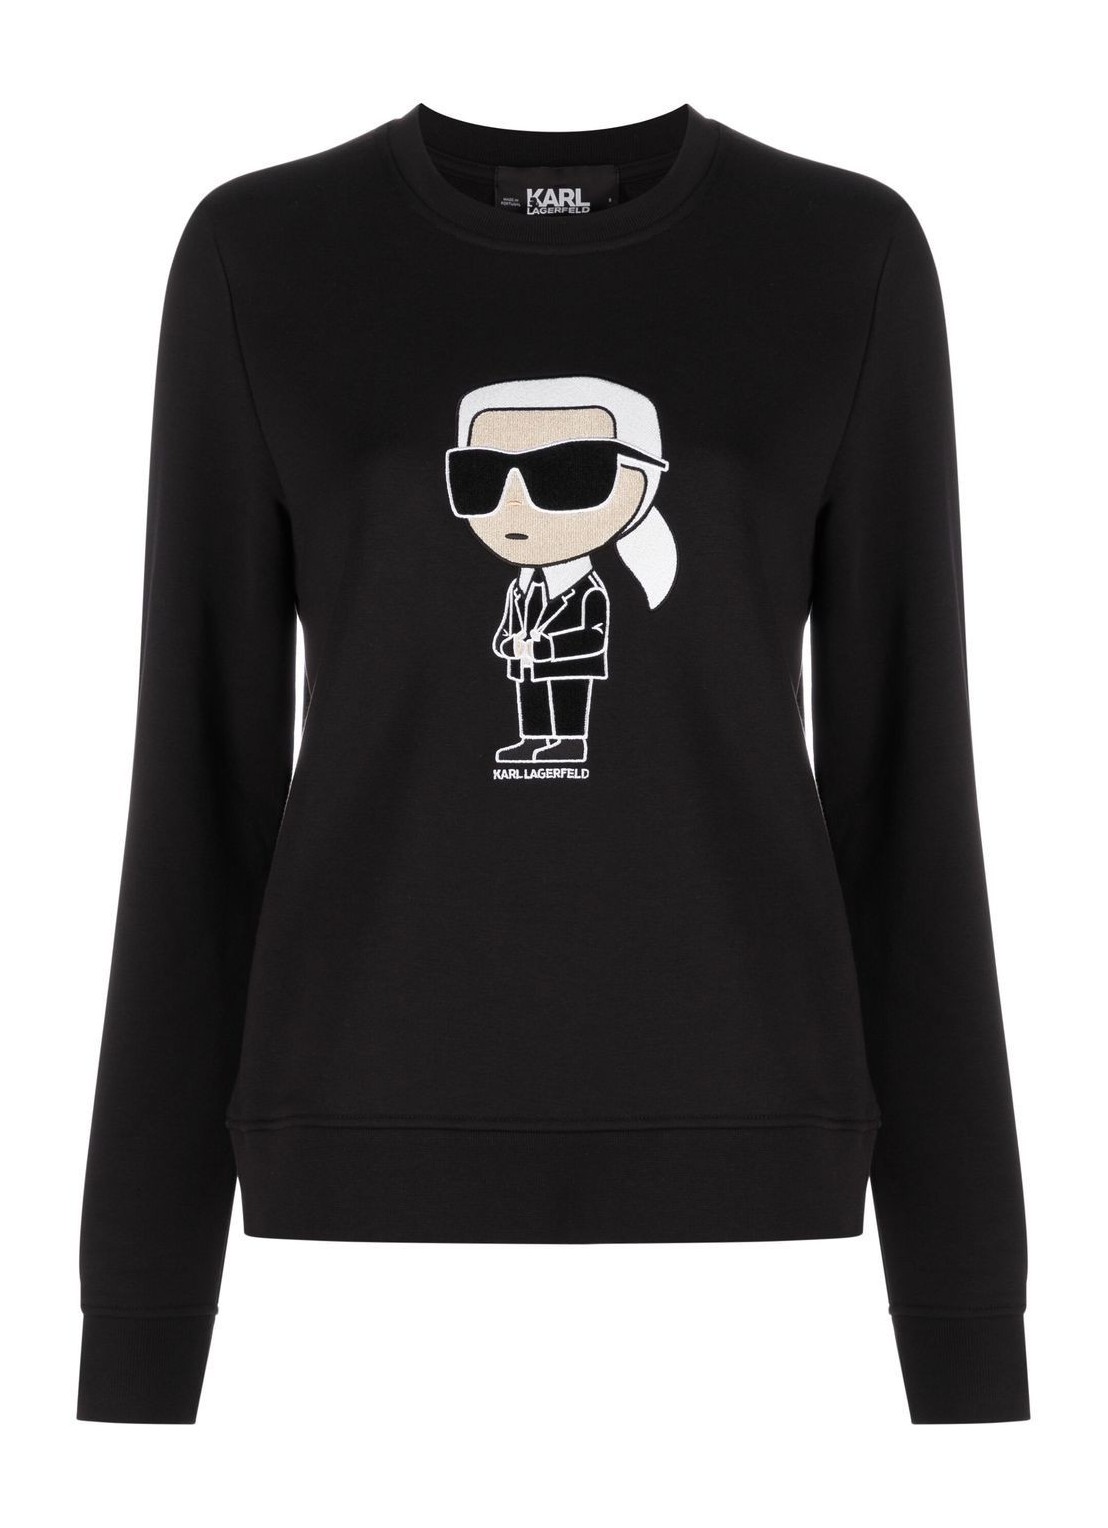 Sudadera karl lagerfeld sweater woman ikonik 2.0 karl sweatshirt 230w1800 999 talla M
 